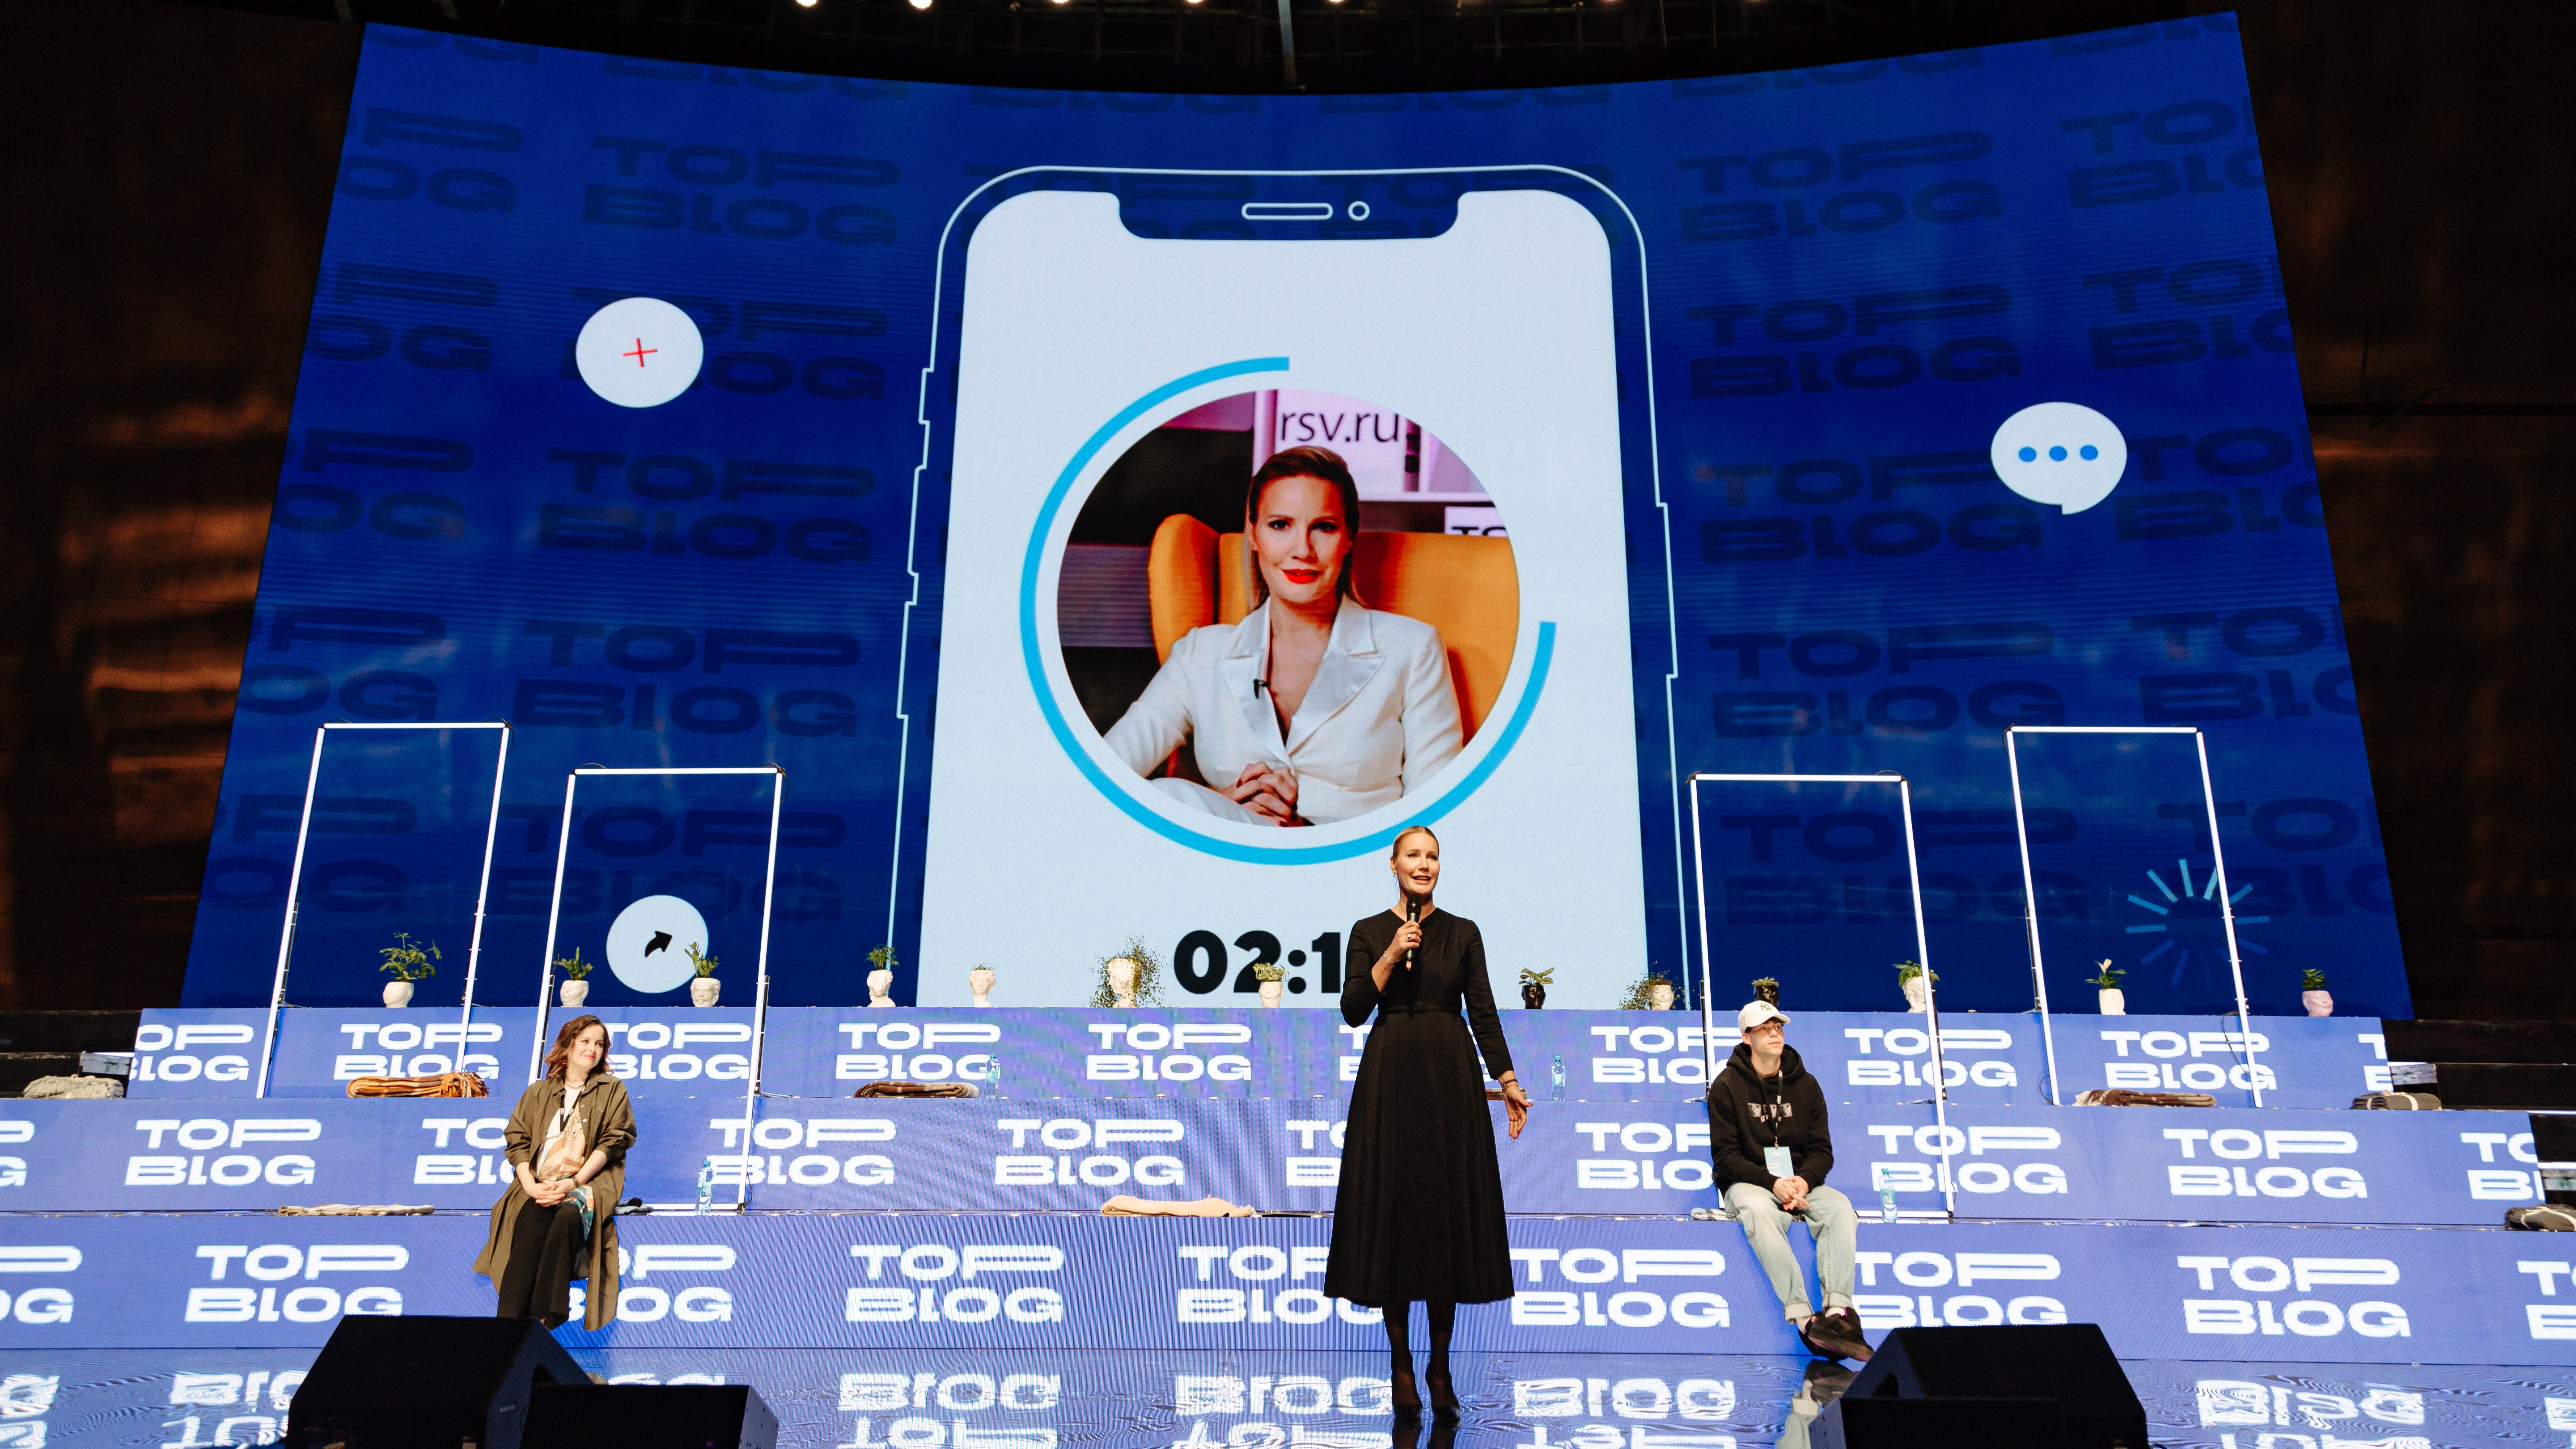 В Москве прошел масштабный форум блогеров